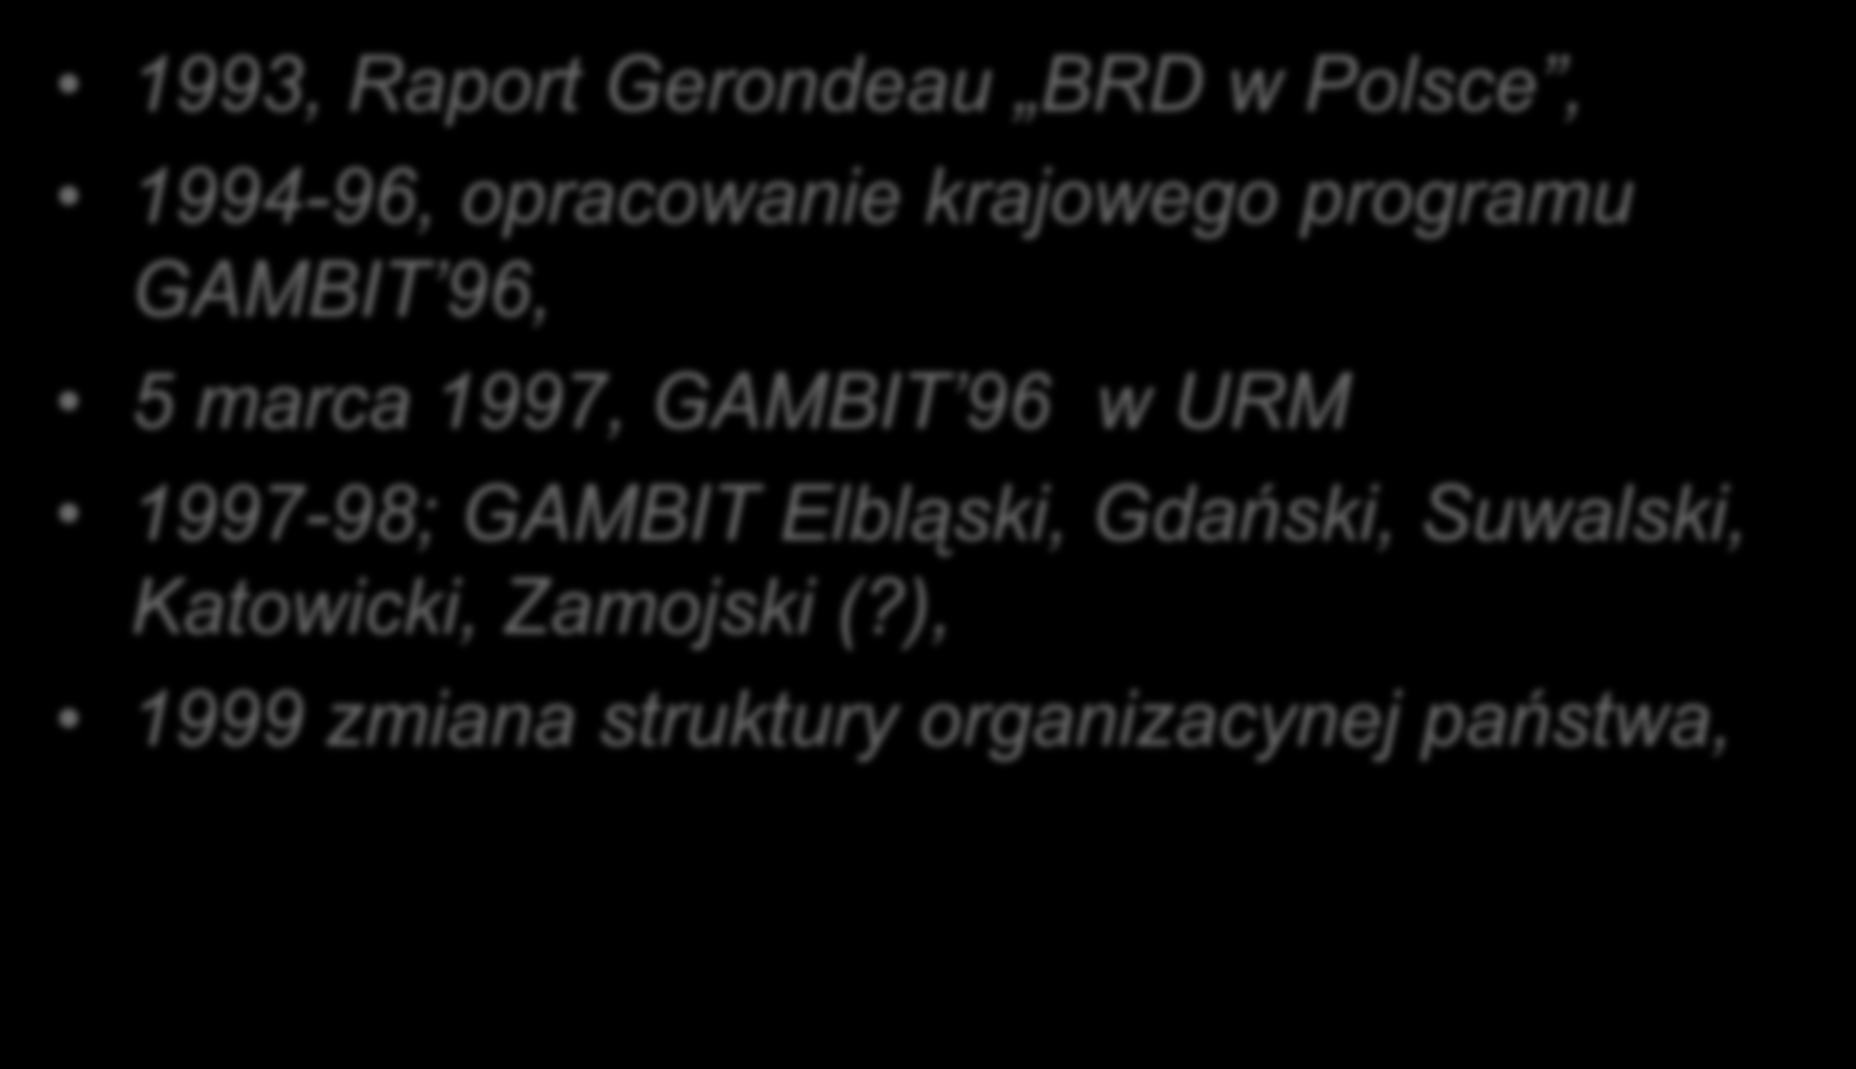 Kartki z kalendarza 1993, Raport Gerondeau BRD w Polsce, 1994-96, opracowanie krajowego programu GAMBIT 96, 5 marca 1997,